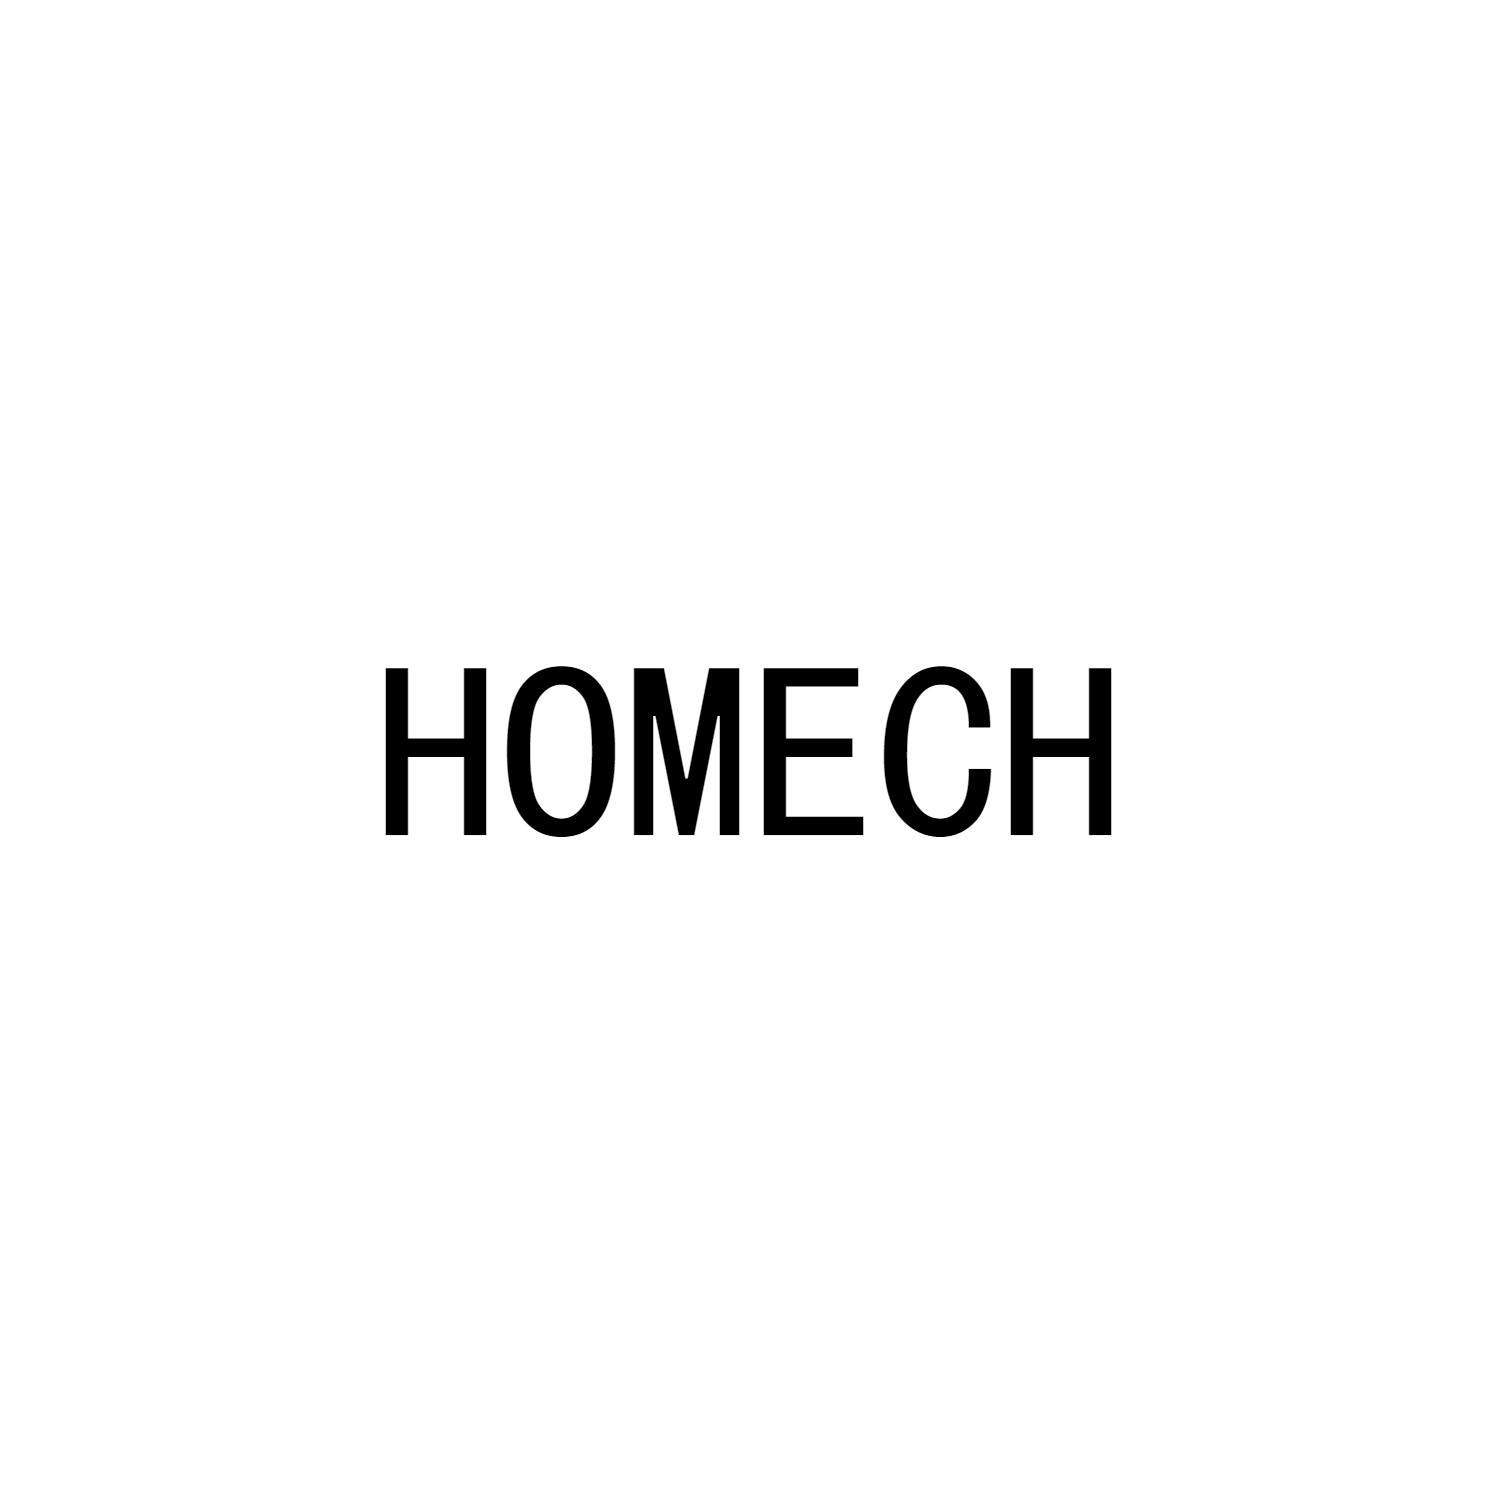 HOMECH